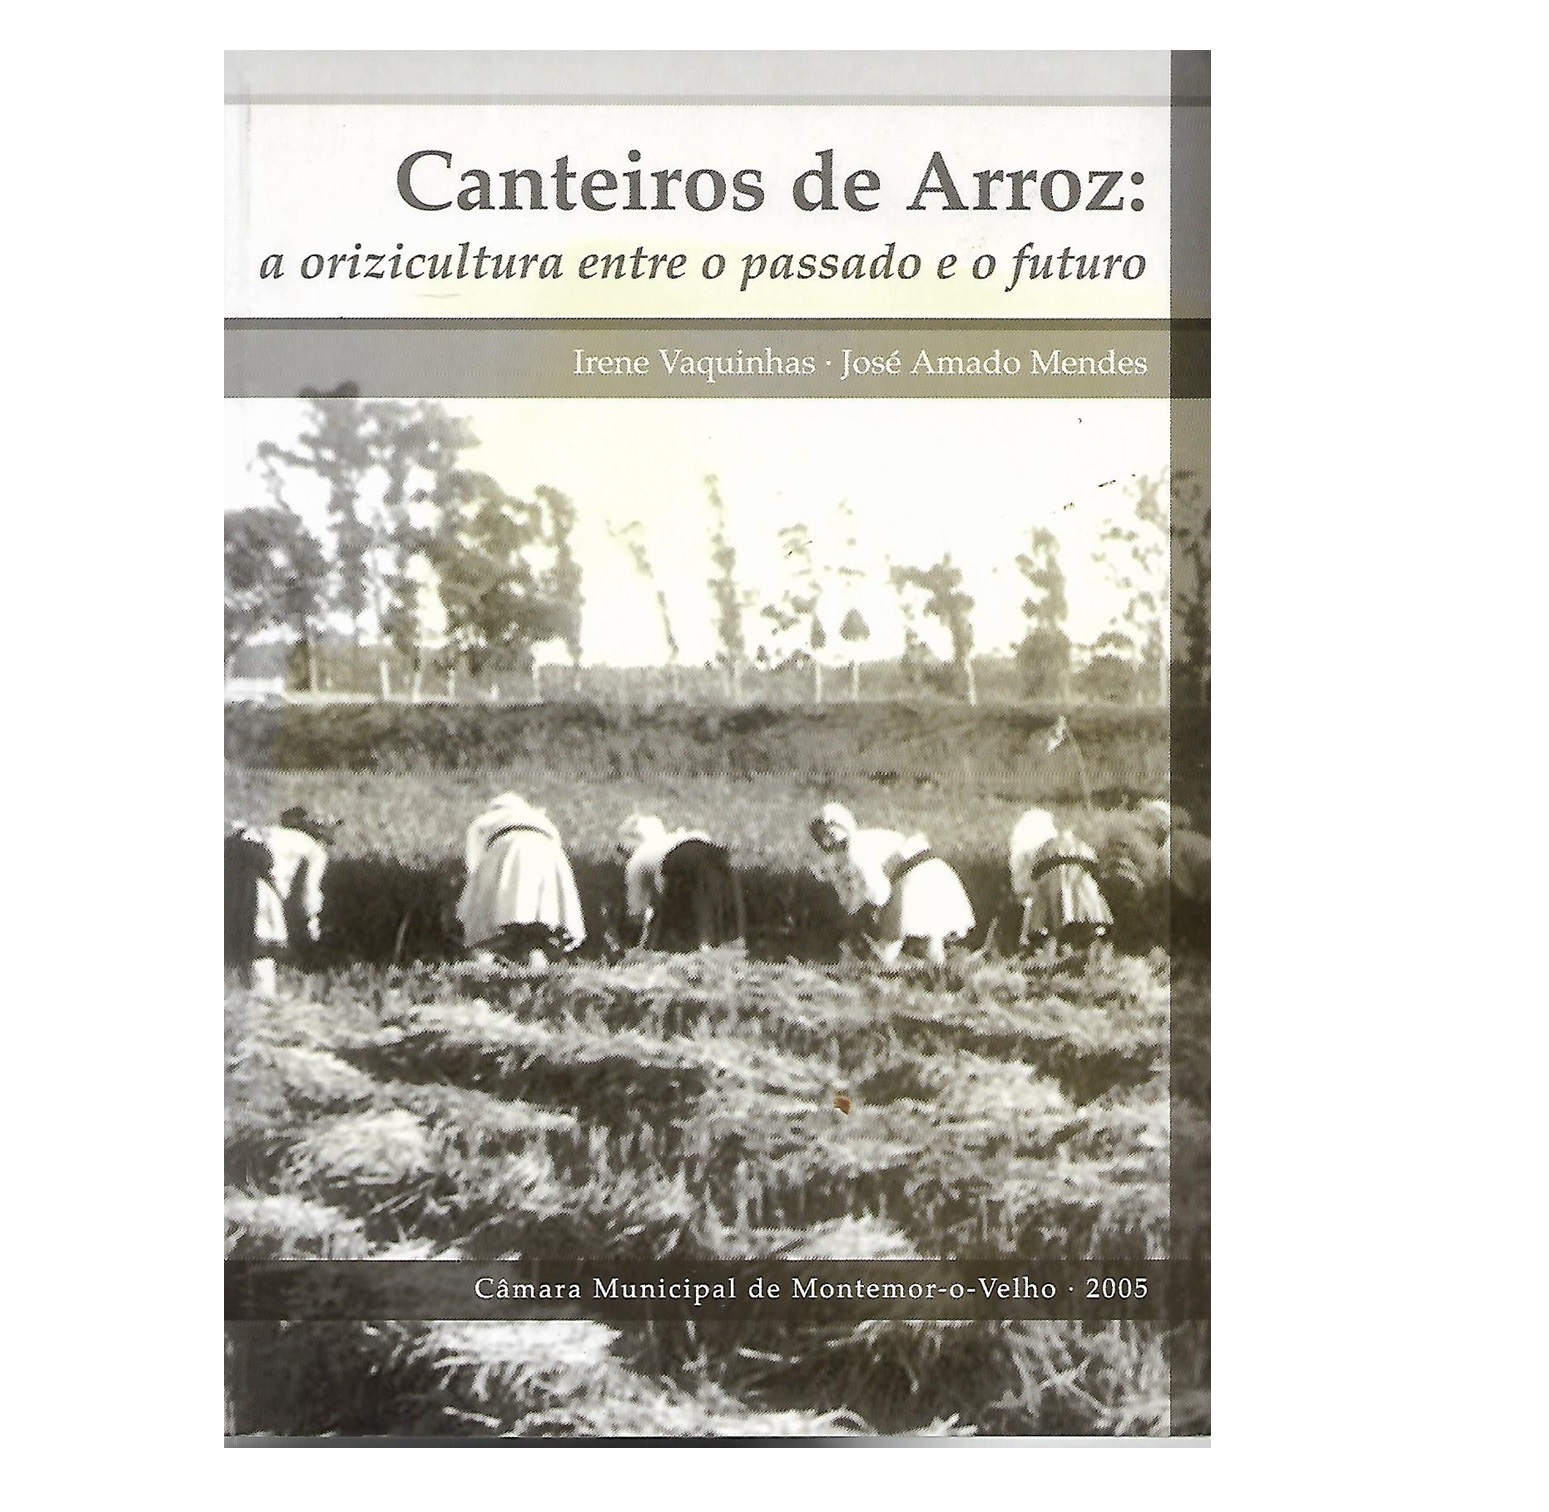 CANTEIROS DE ARROZ: A ORIZICULTURA ENTRE O PASSADO E O FUTURO